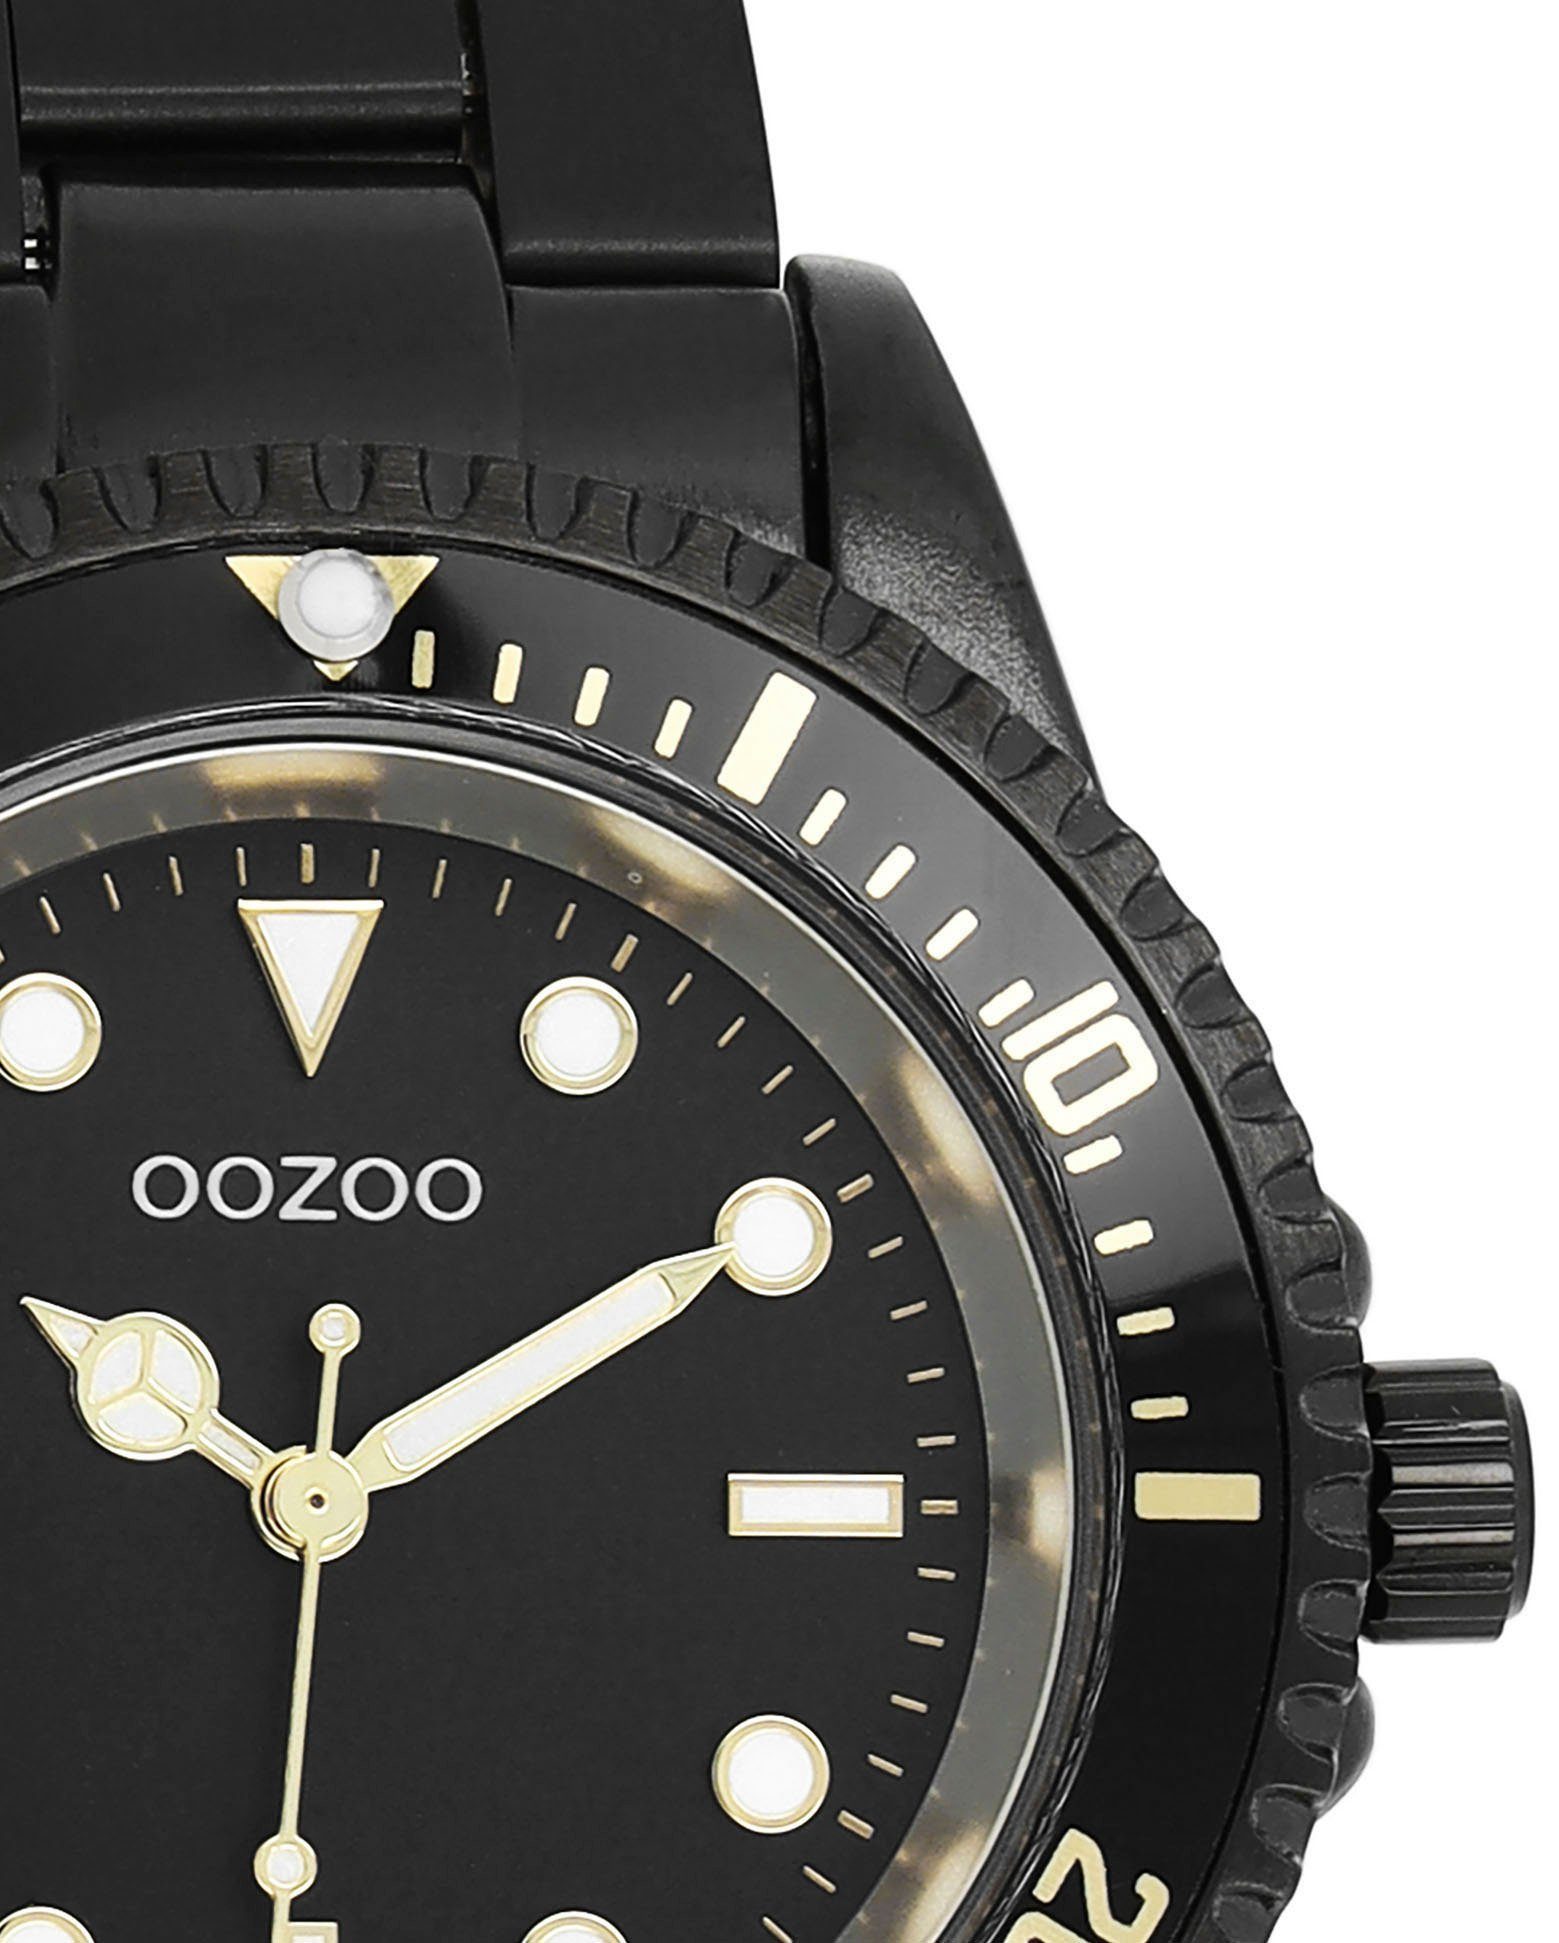 OOZOO Quarzuhr C11149, Metallgehäuse, schwarz IP-beschichtet, Ø ca. 36 mm